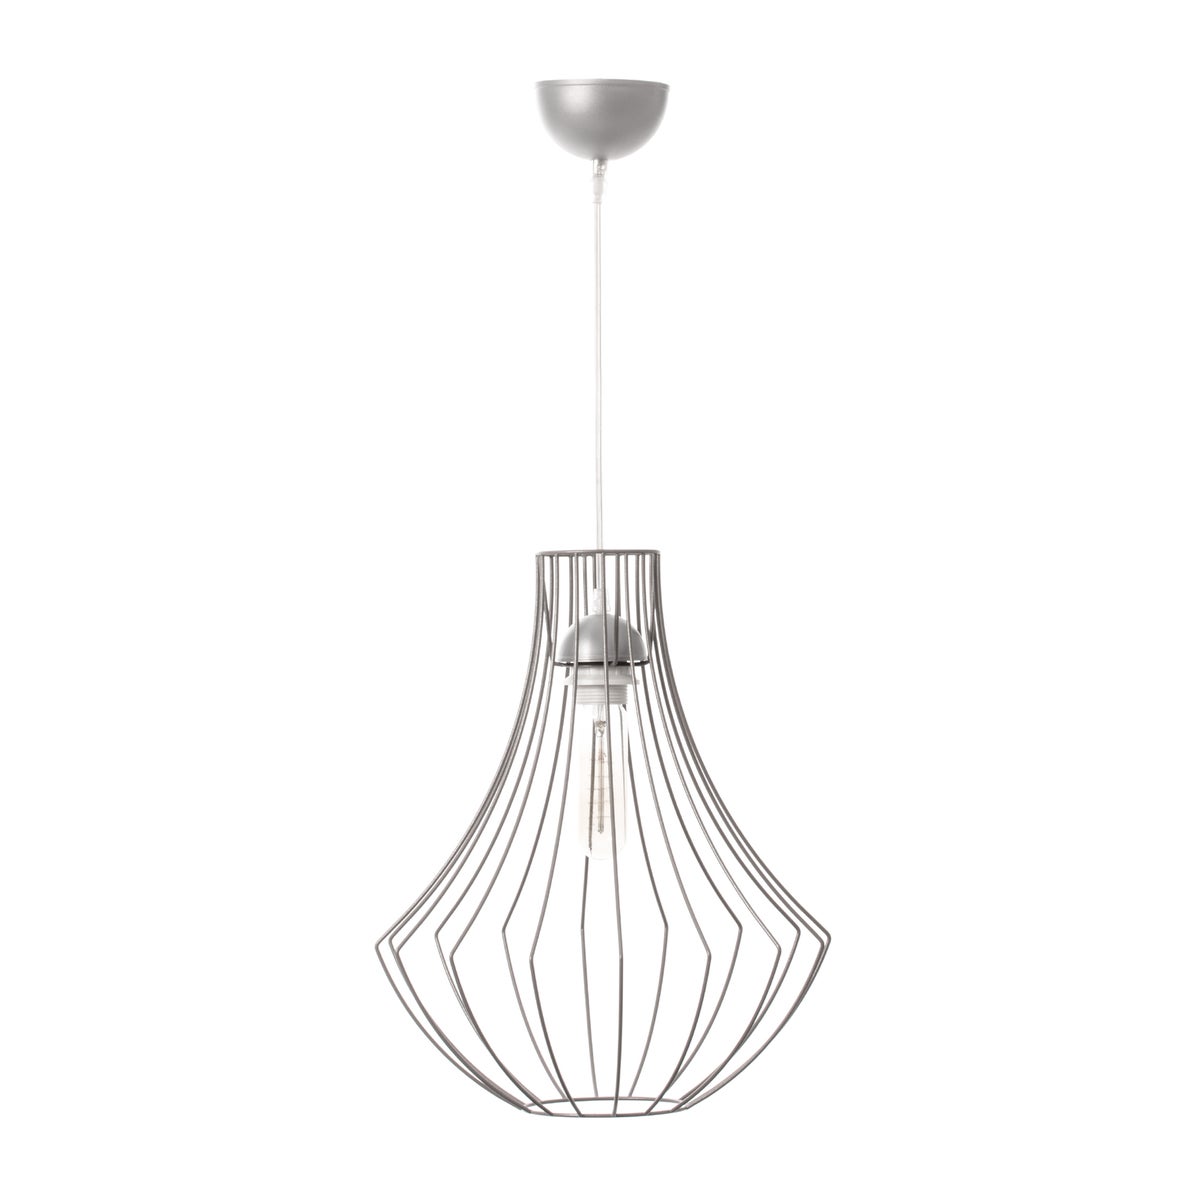 Industrielle Gitterpendelleuchte in Silber, Käfiglampe Hängelampe im Loft Stil | Wohnzimmer Esszimmer Leuchte